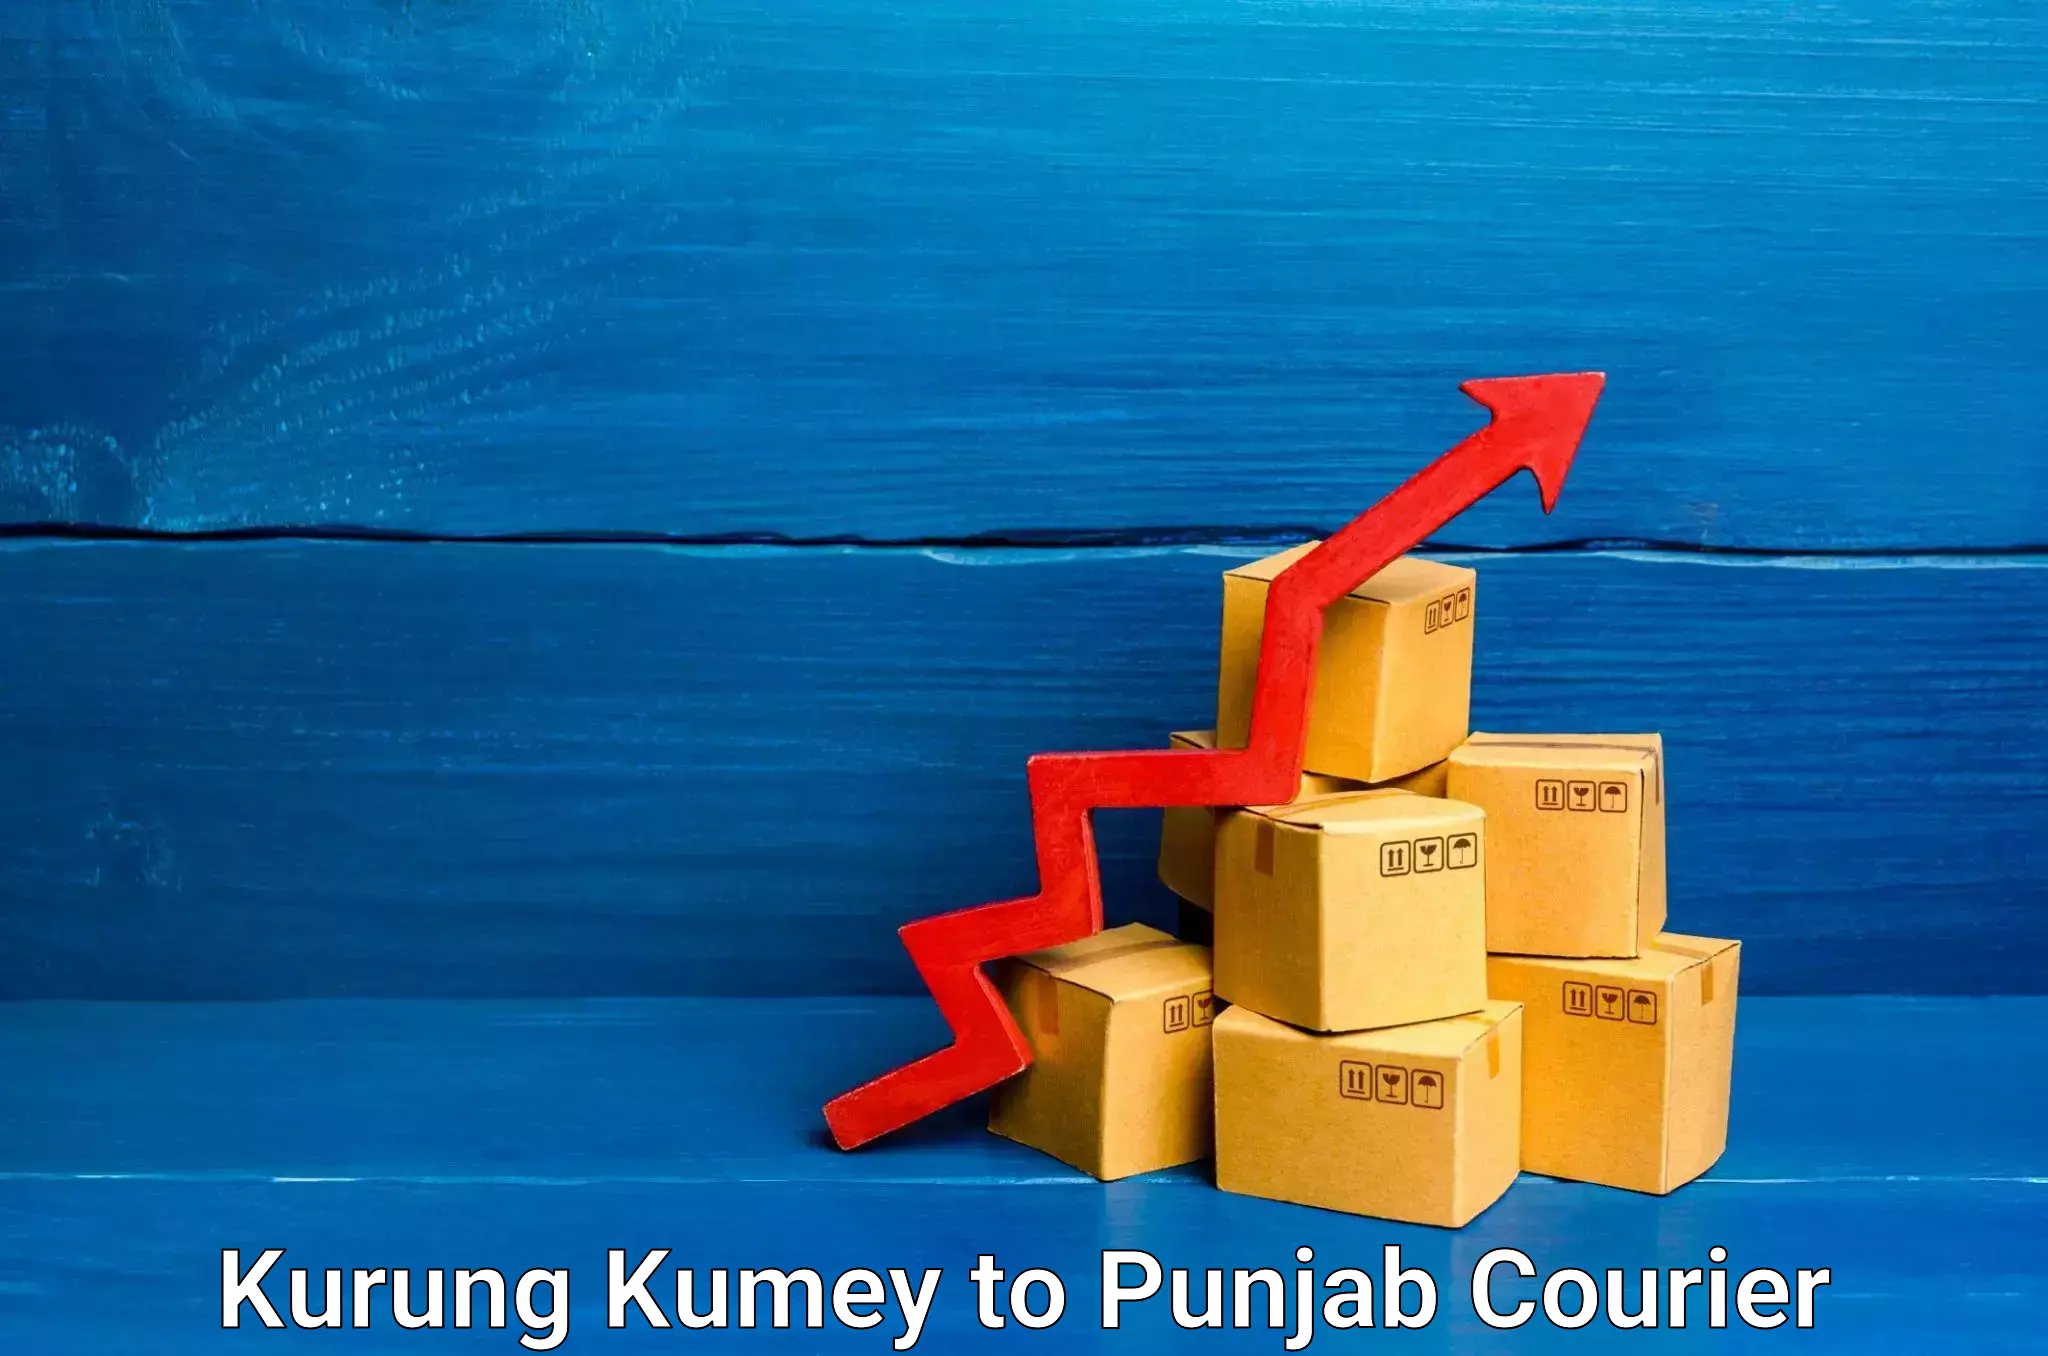 Efficient courier operations Kurung Kumey to Punjab